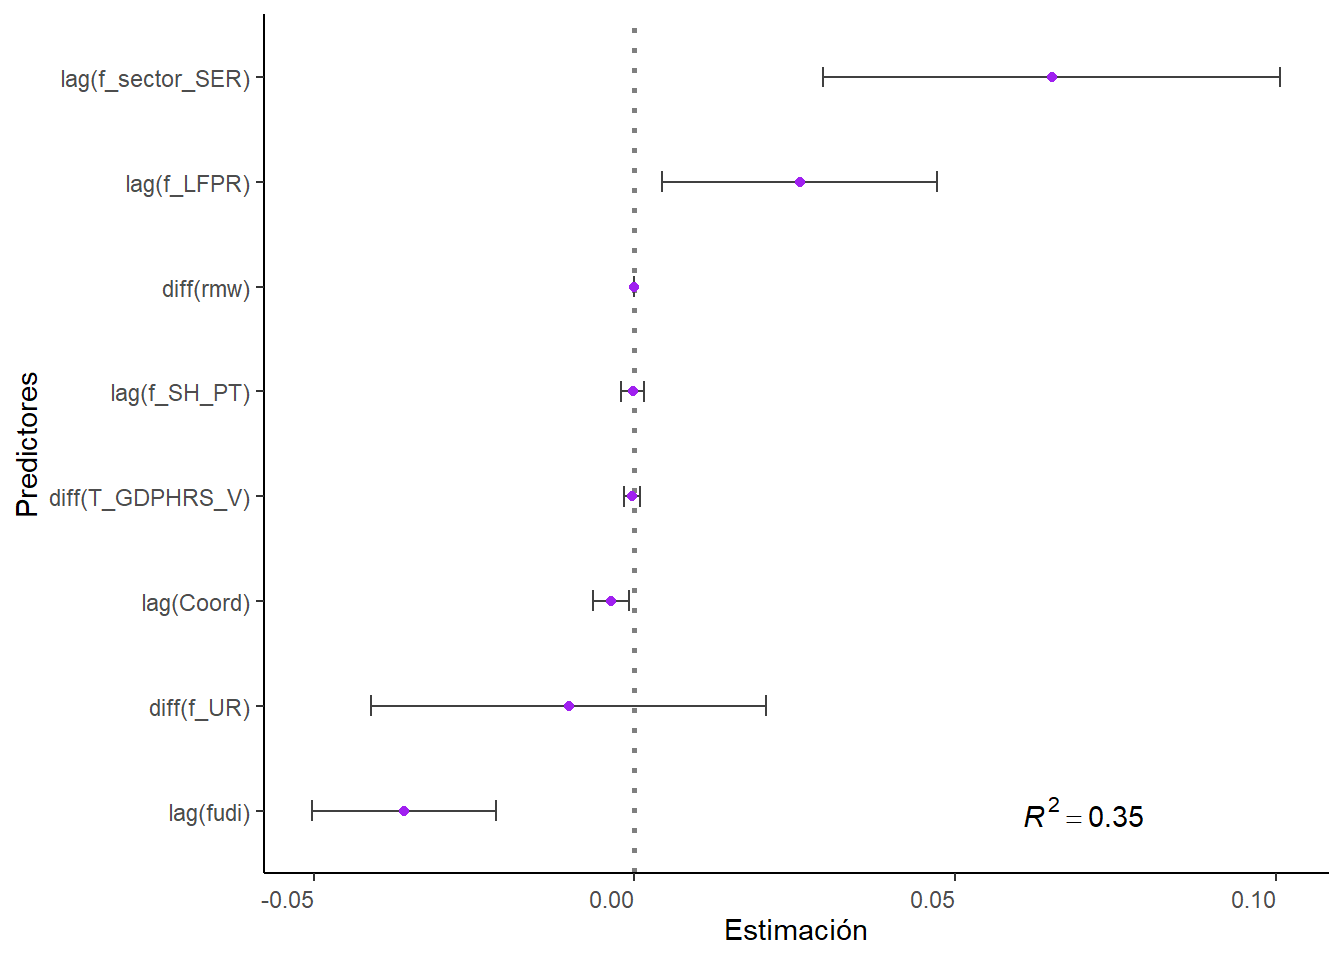 Tamaño efecto y significancia de coeficientes del modelo mundial para estimar la feminización de la sindicalización. Se indica el \(R^2_{ajustado}\) a un costado derecho.